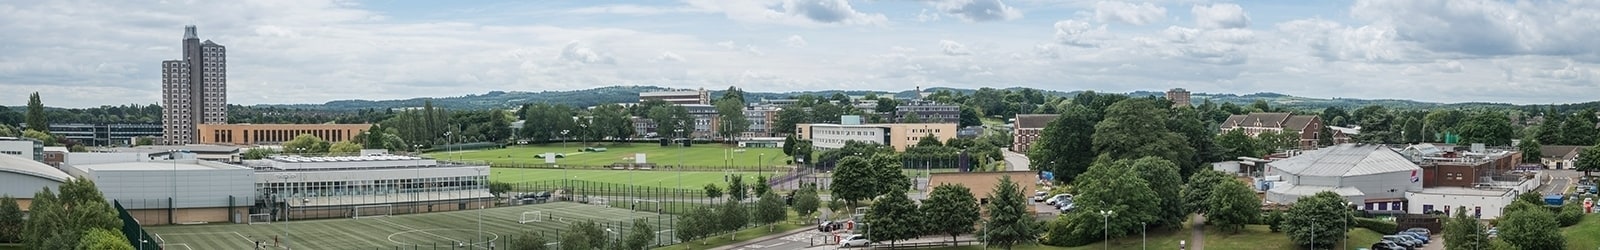 
Loughborough University Campus
